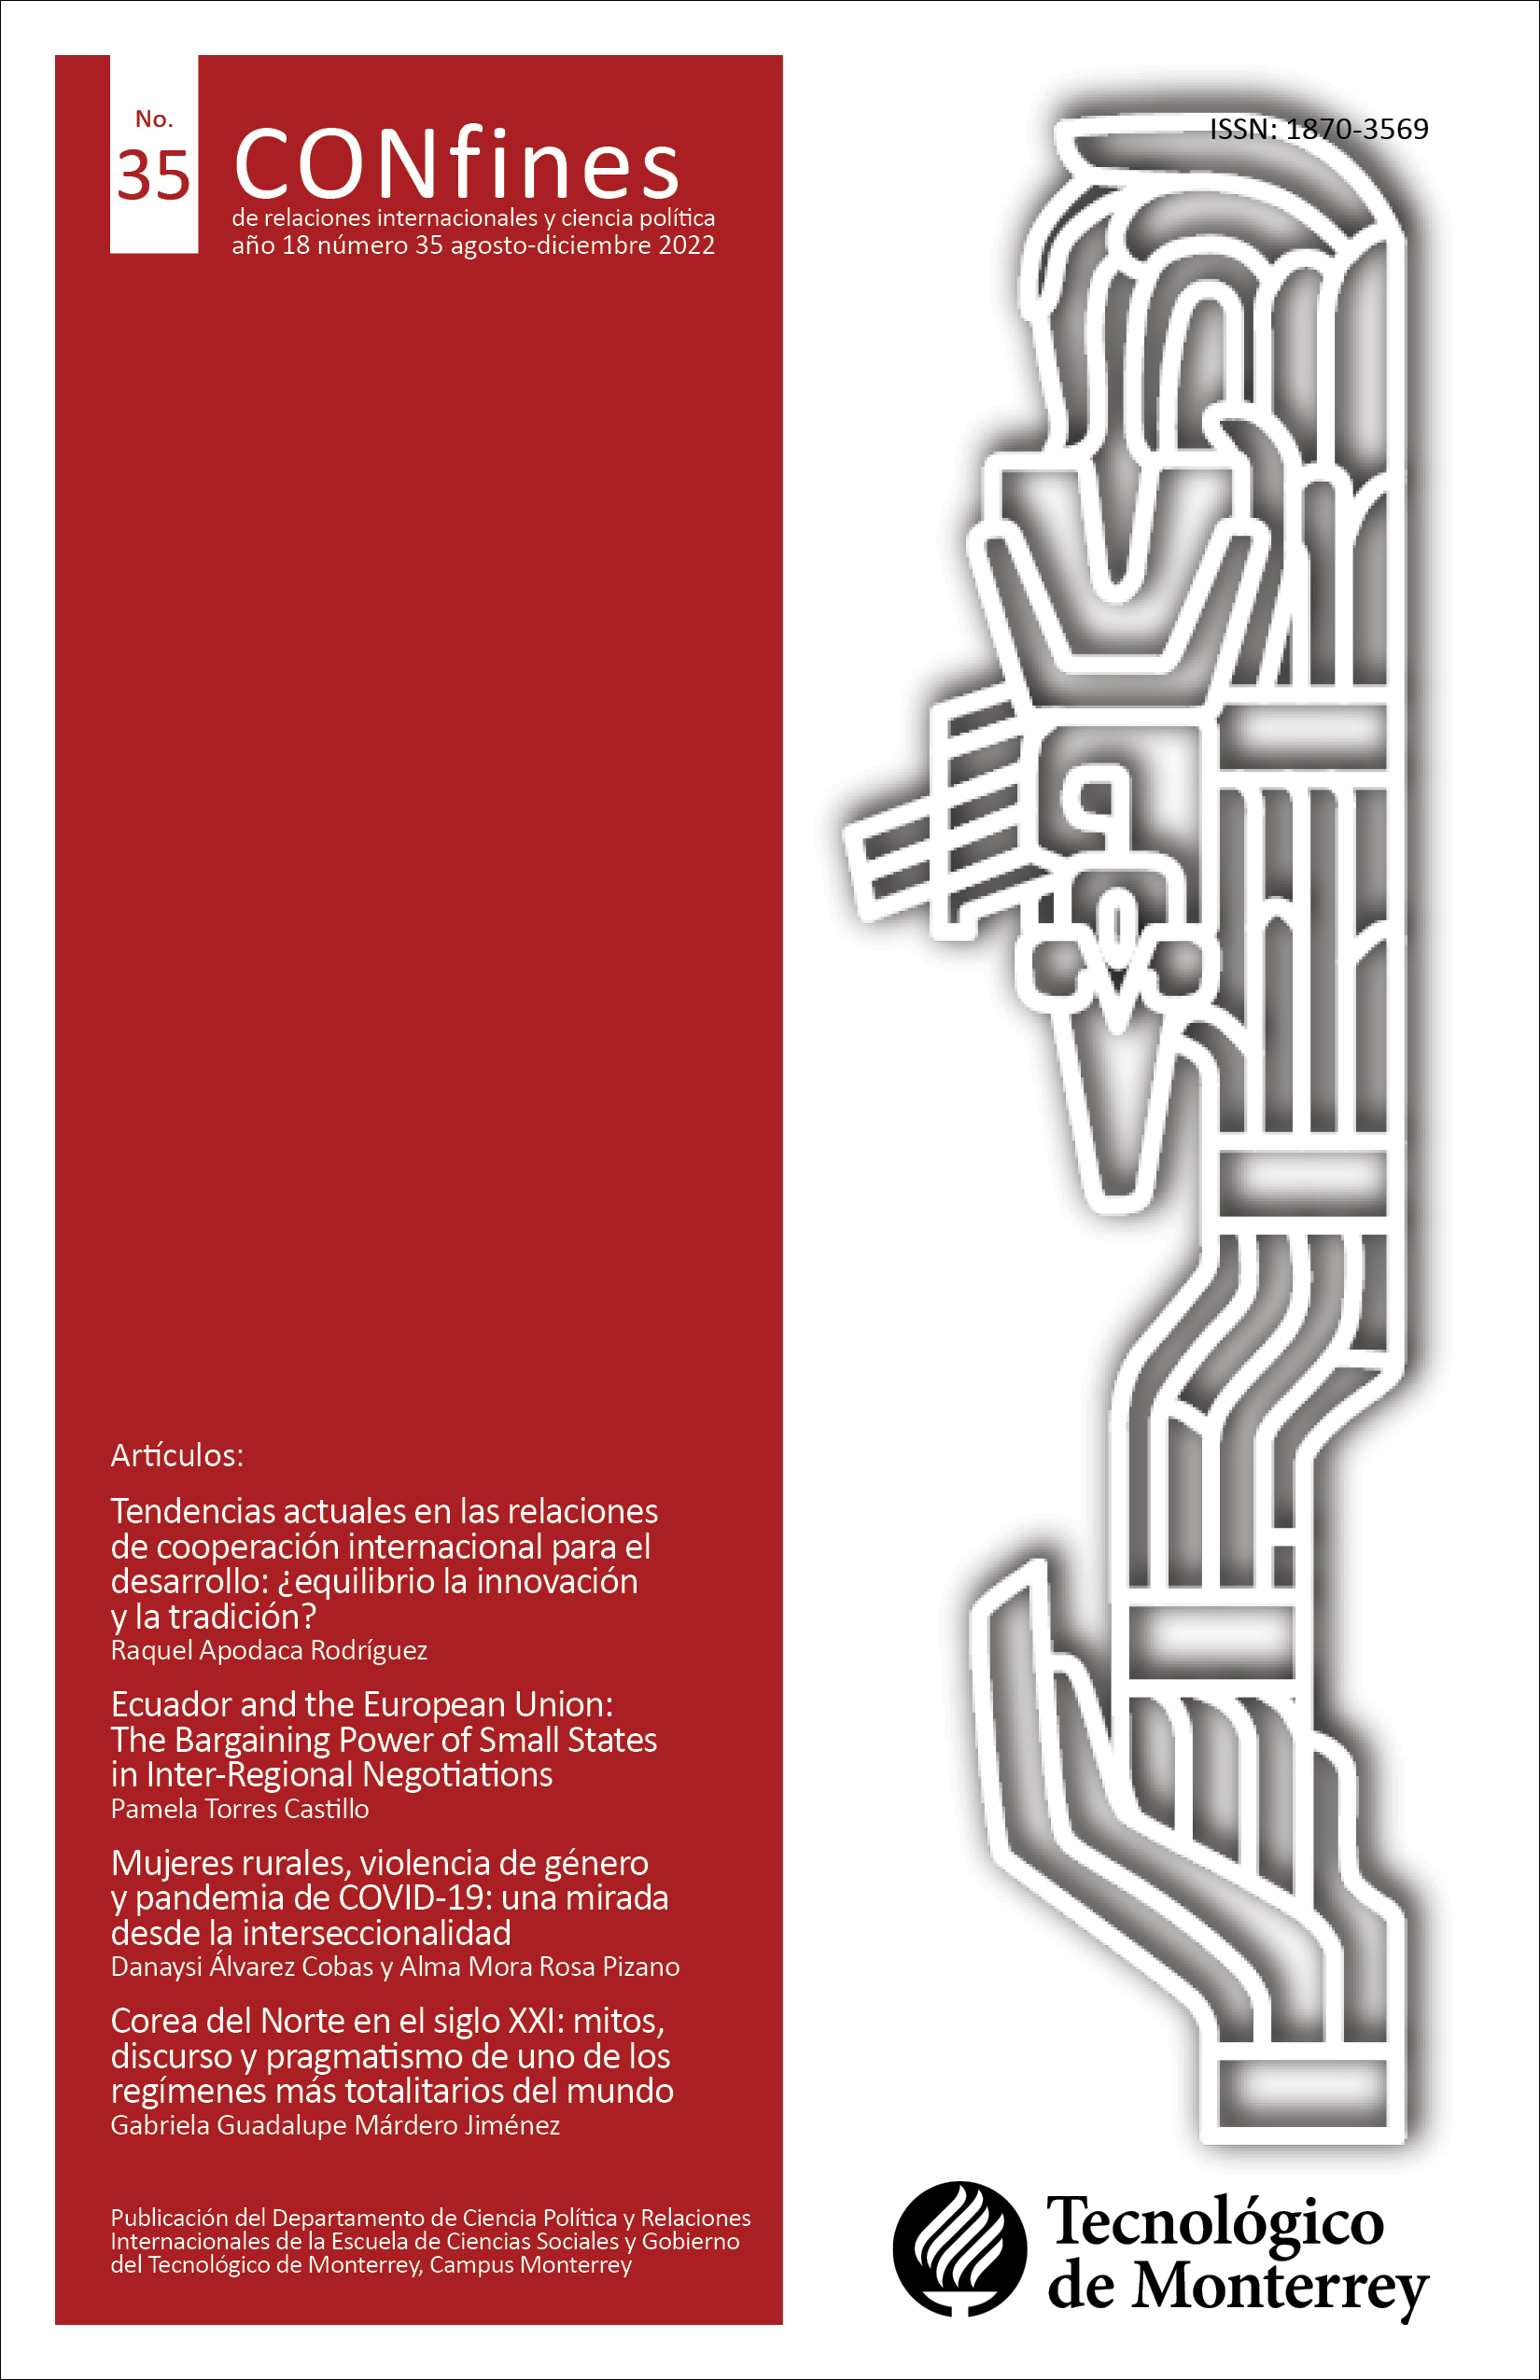 					Ver Núm. 35 (18): CONfines Revista de Ciencia Política y Relaciones Internacionales - Agosto-Diciembre 2022
				